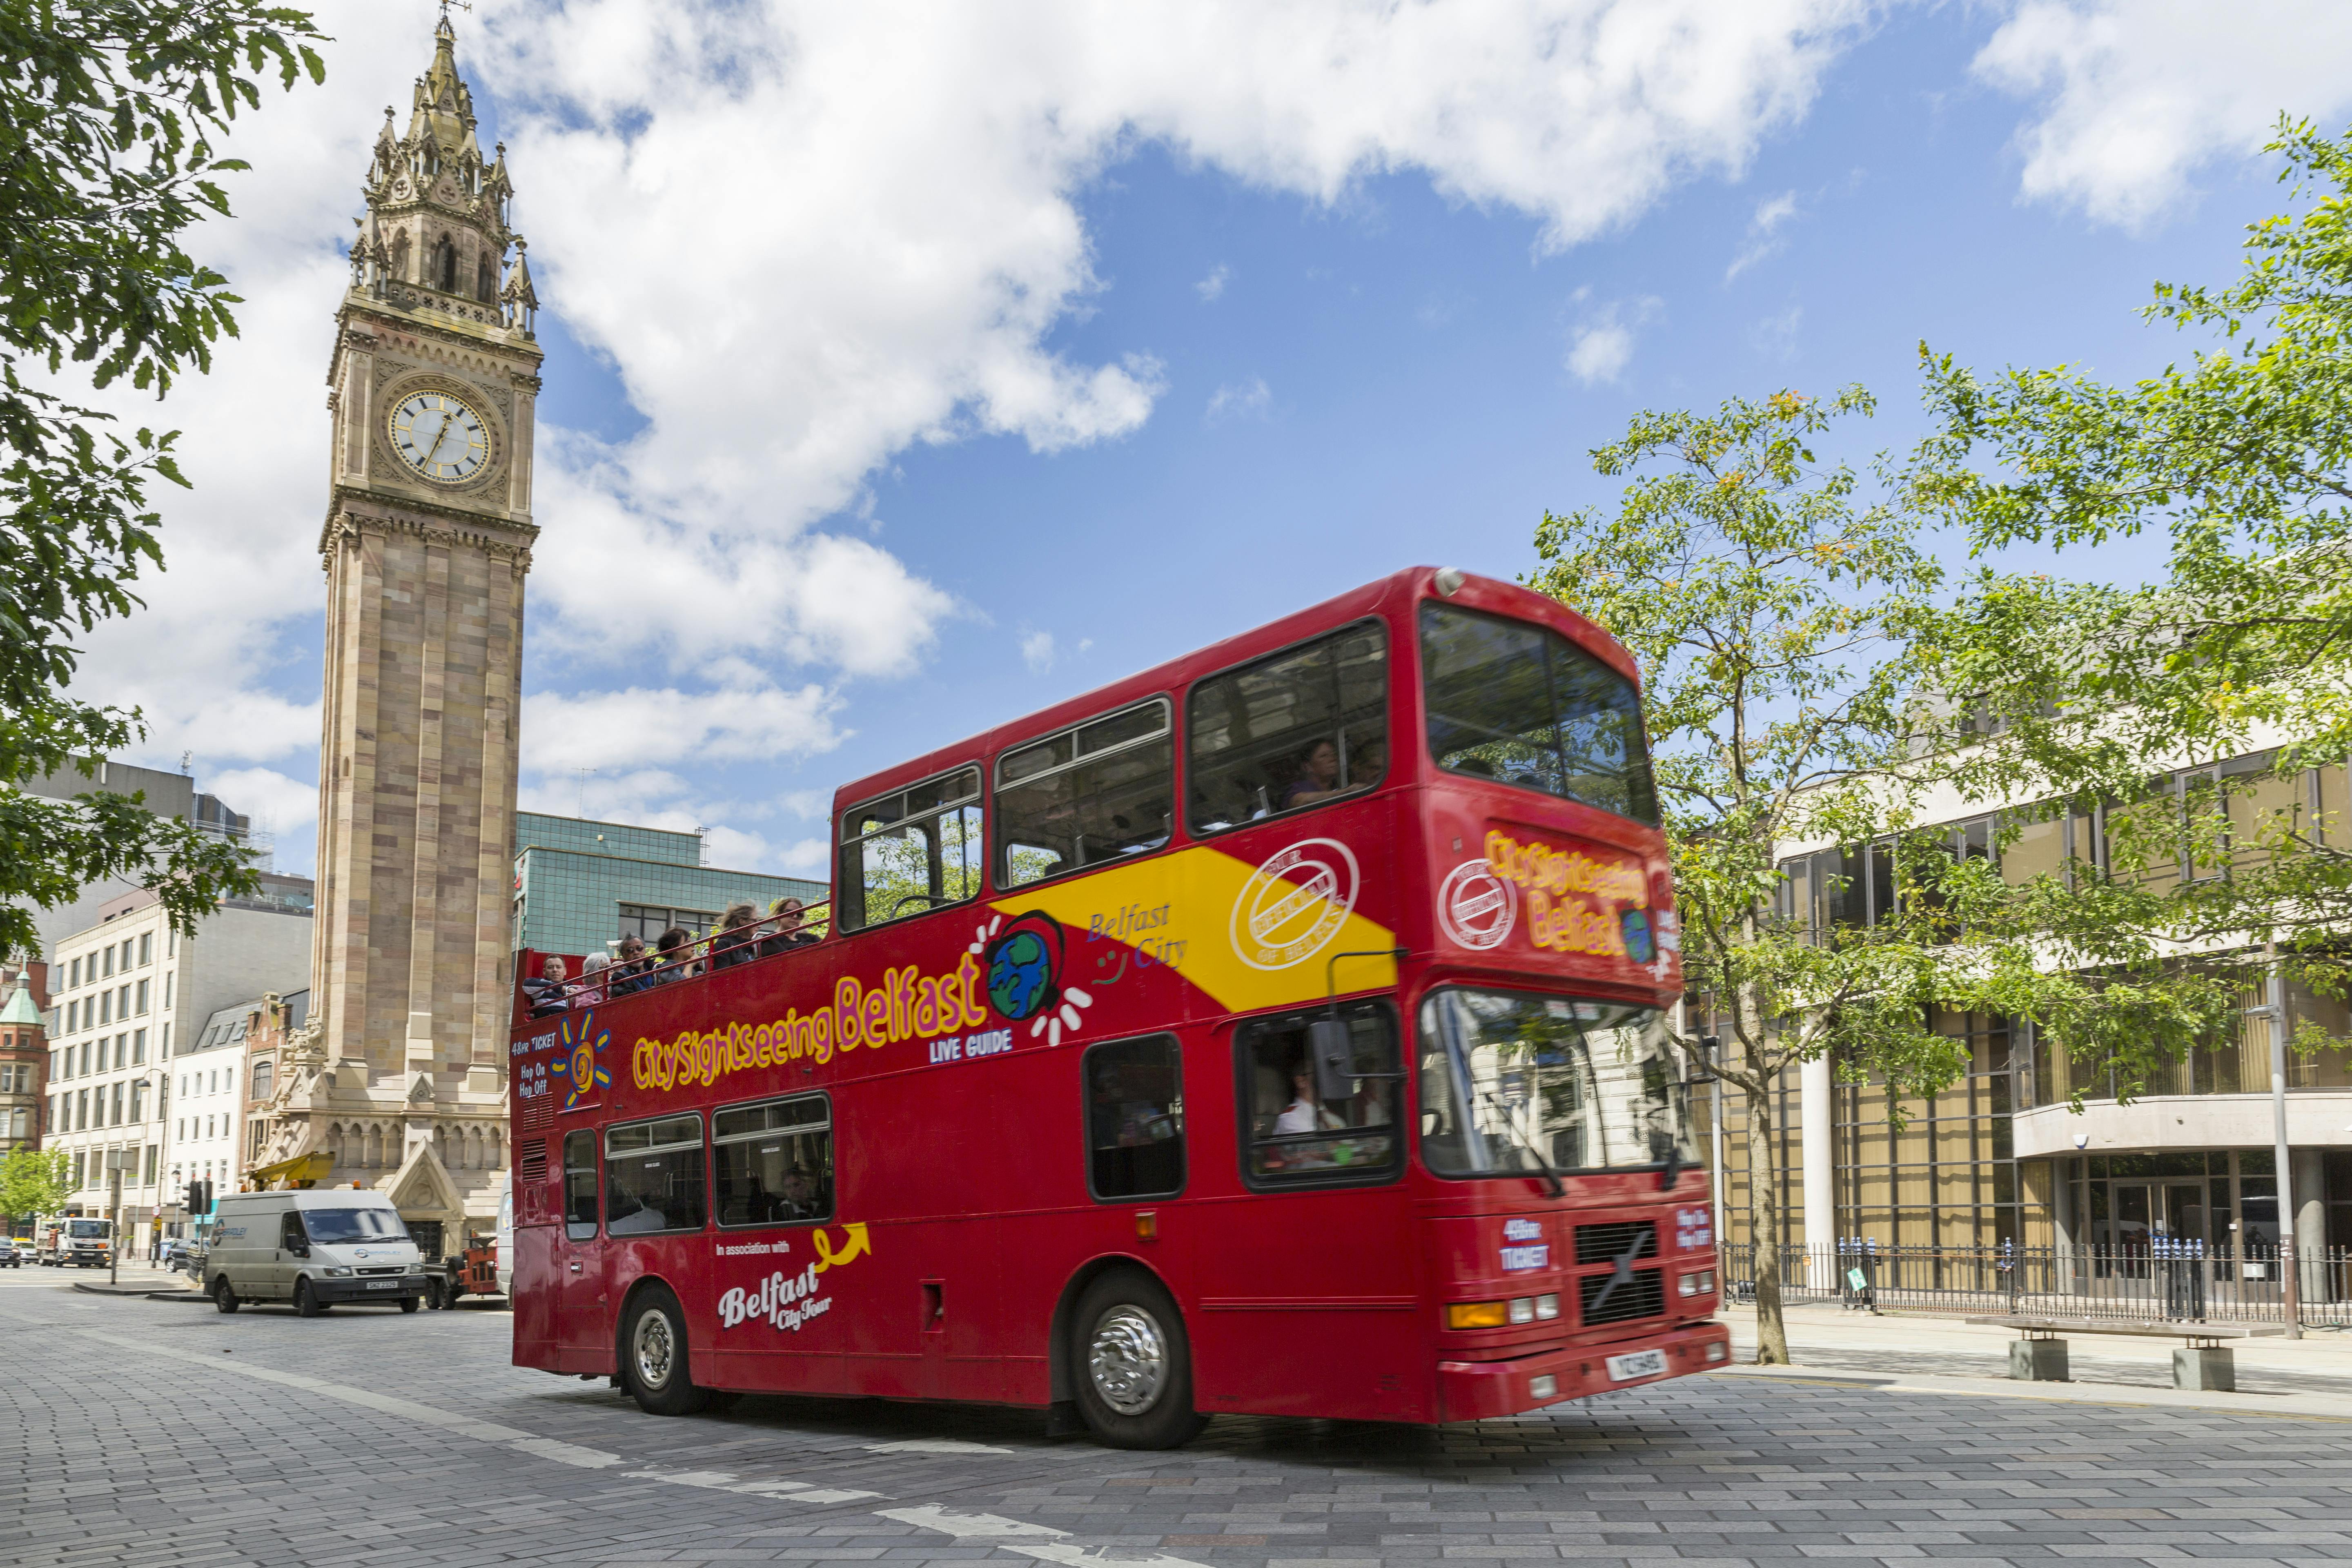 Stadtrundfahrt mit dem Hop-on-Hop-off-Bus durch Belfast